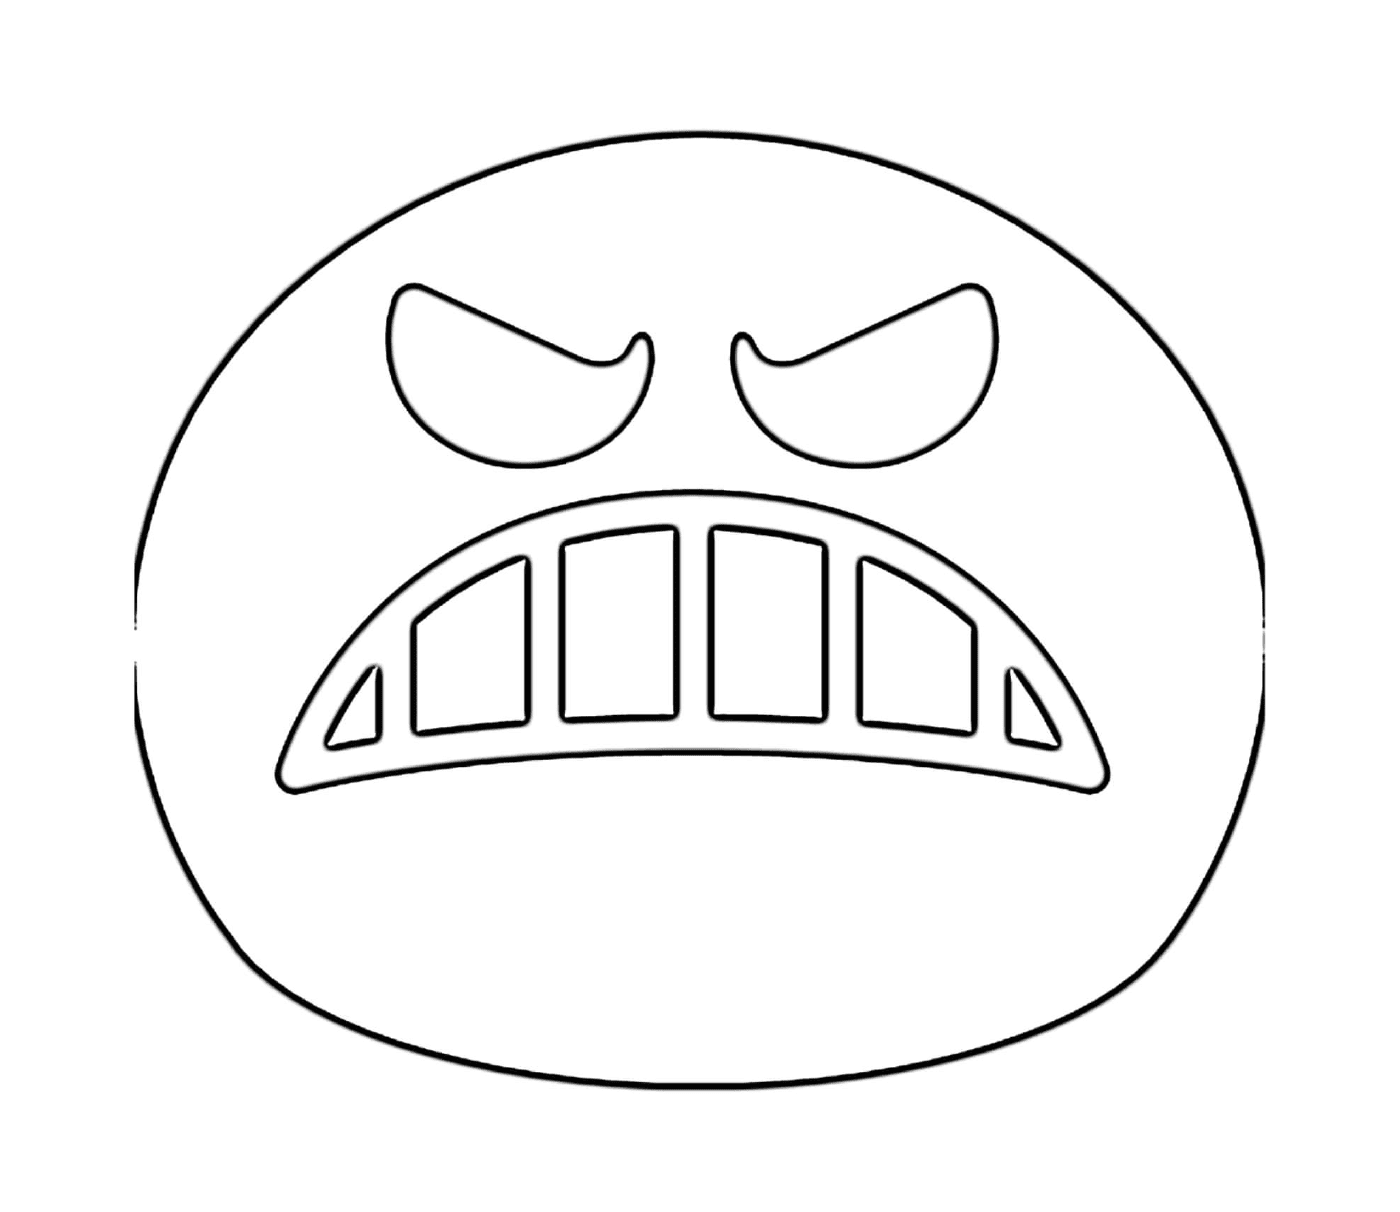  Ein wütendes Gesicht wird gezeichnet 